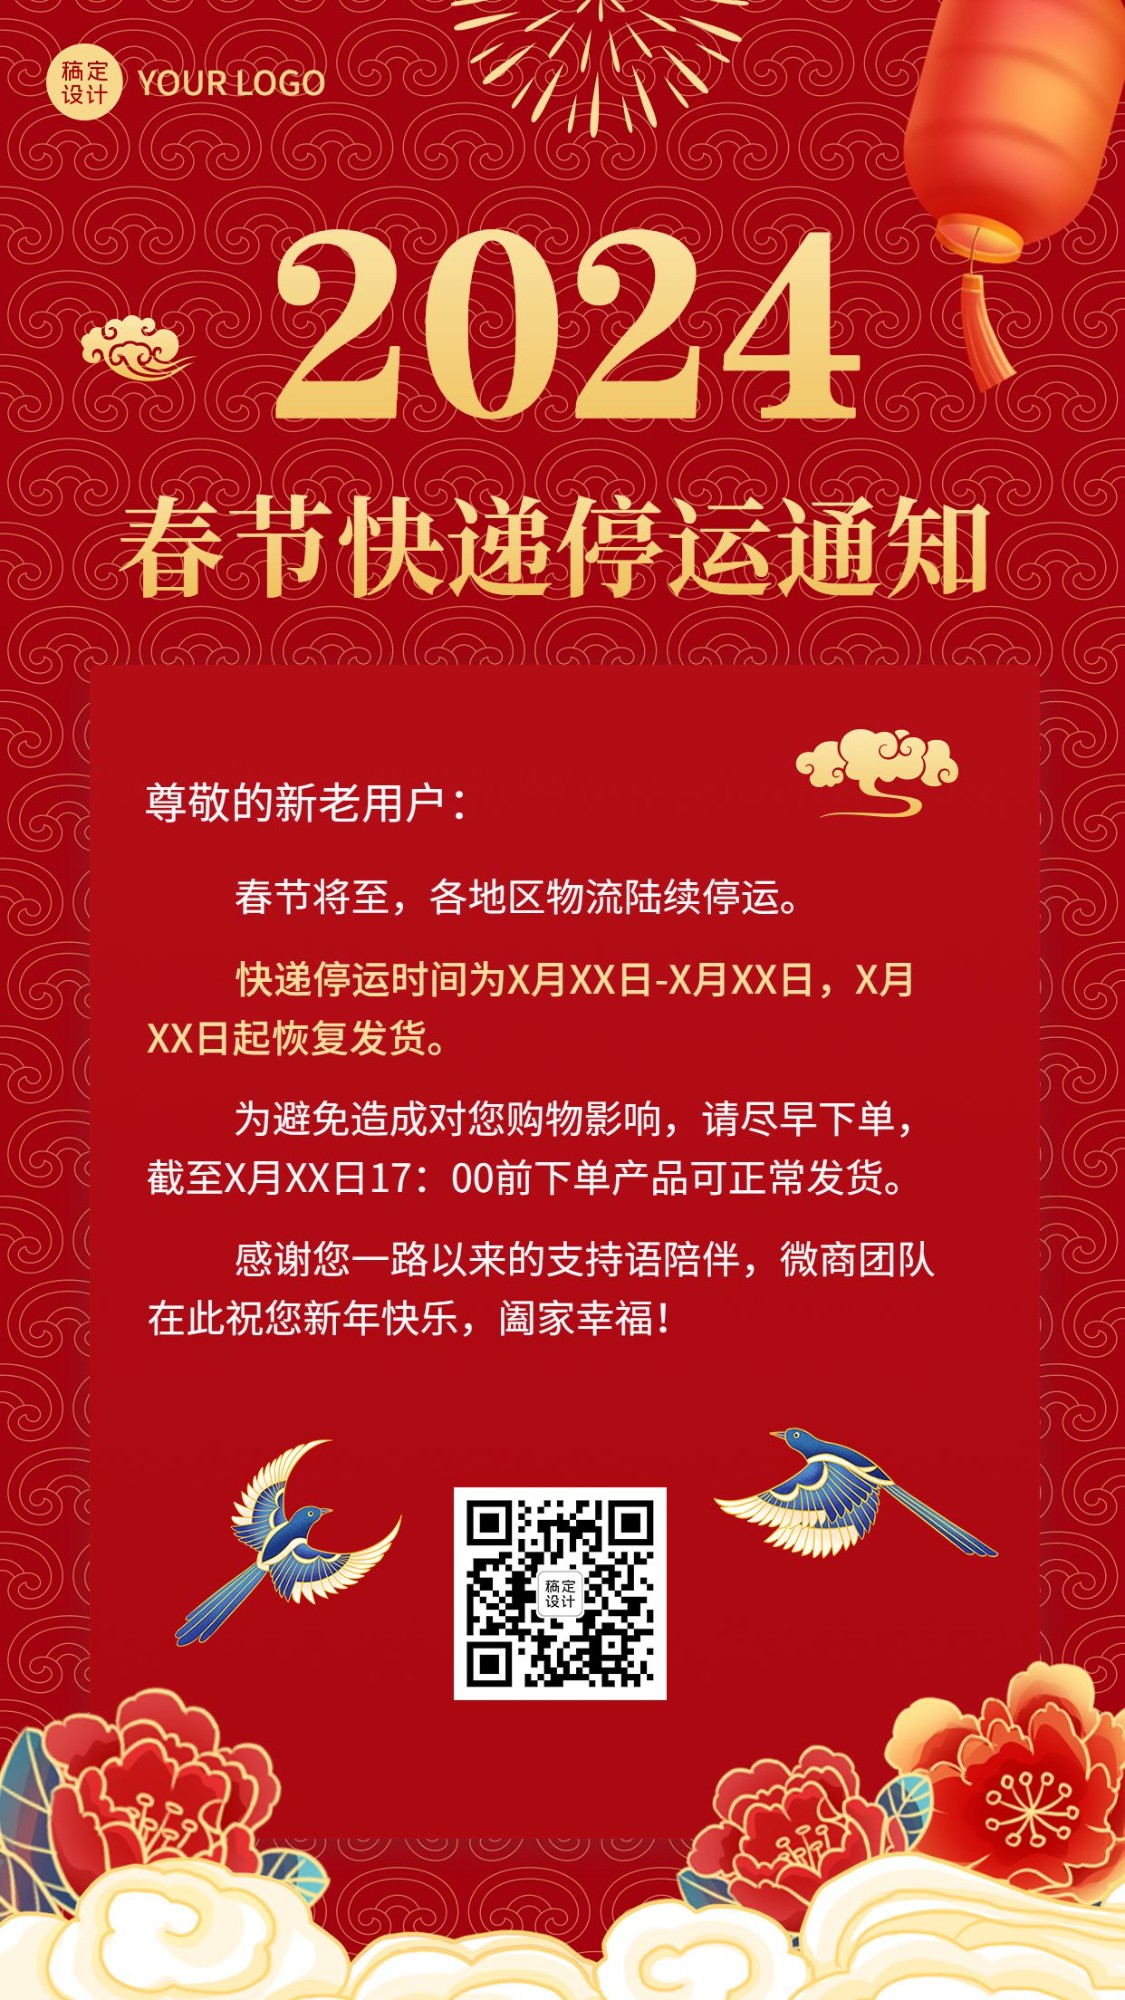 春节微商快递物流停运通知公告喜庆中国风手机海报